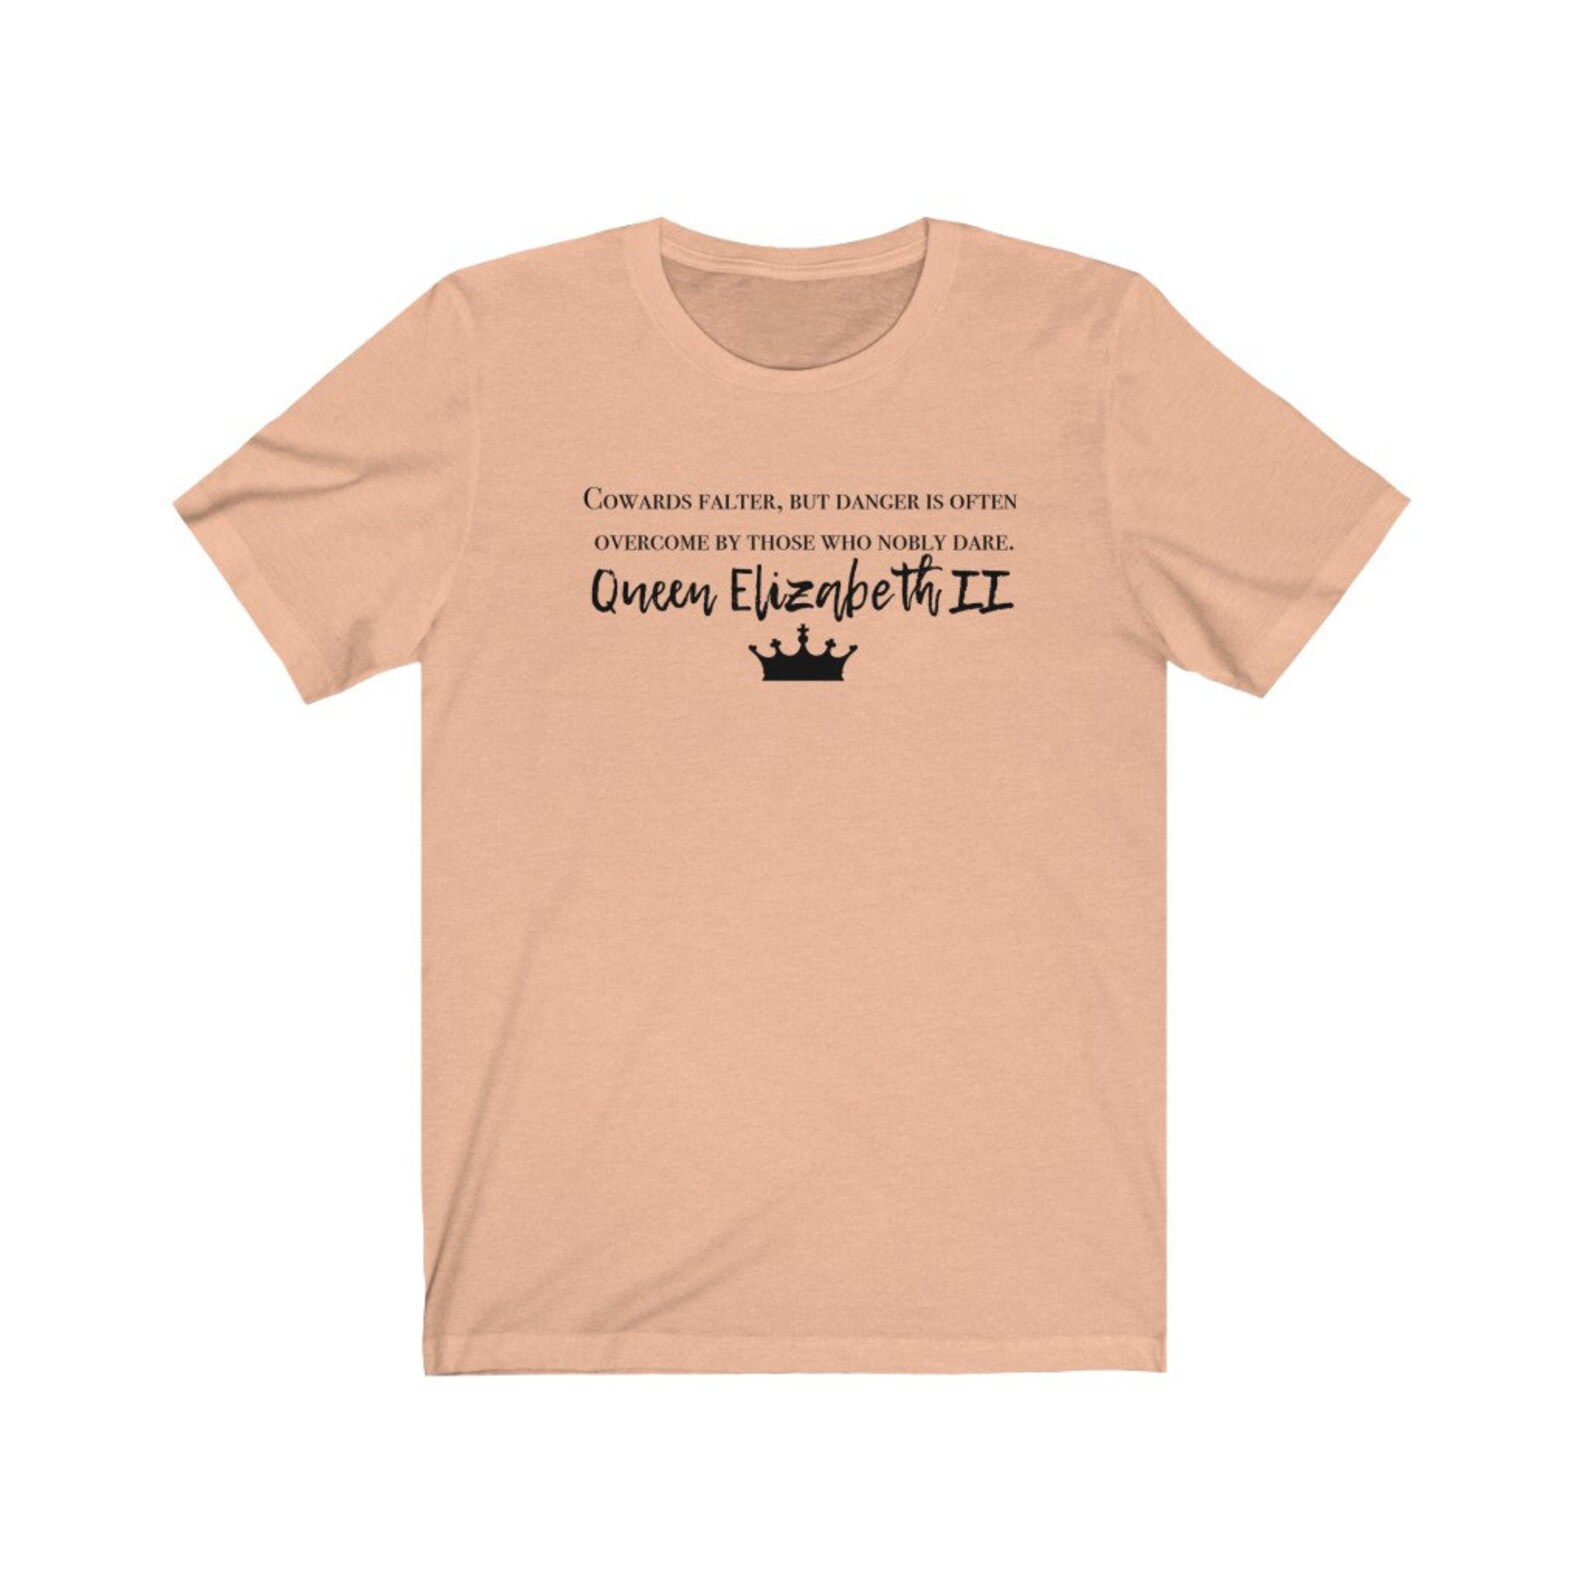 Queen Elizabeth II Shirt the Queen of England Tshirt Great - Etsy